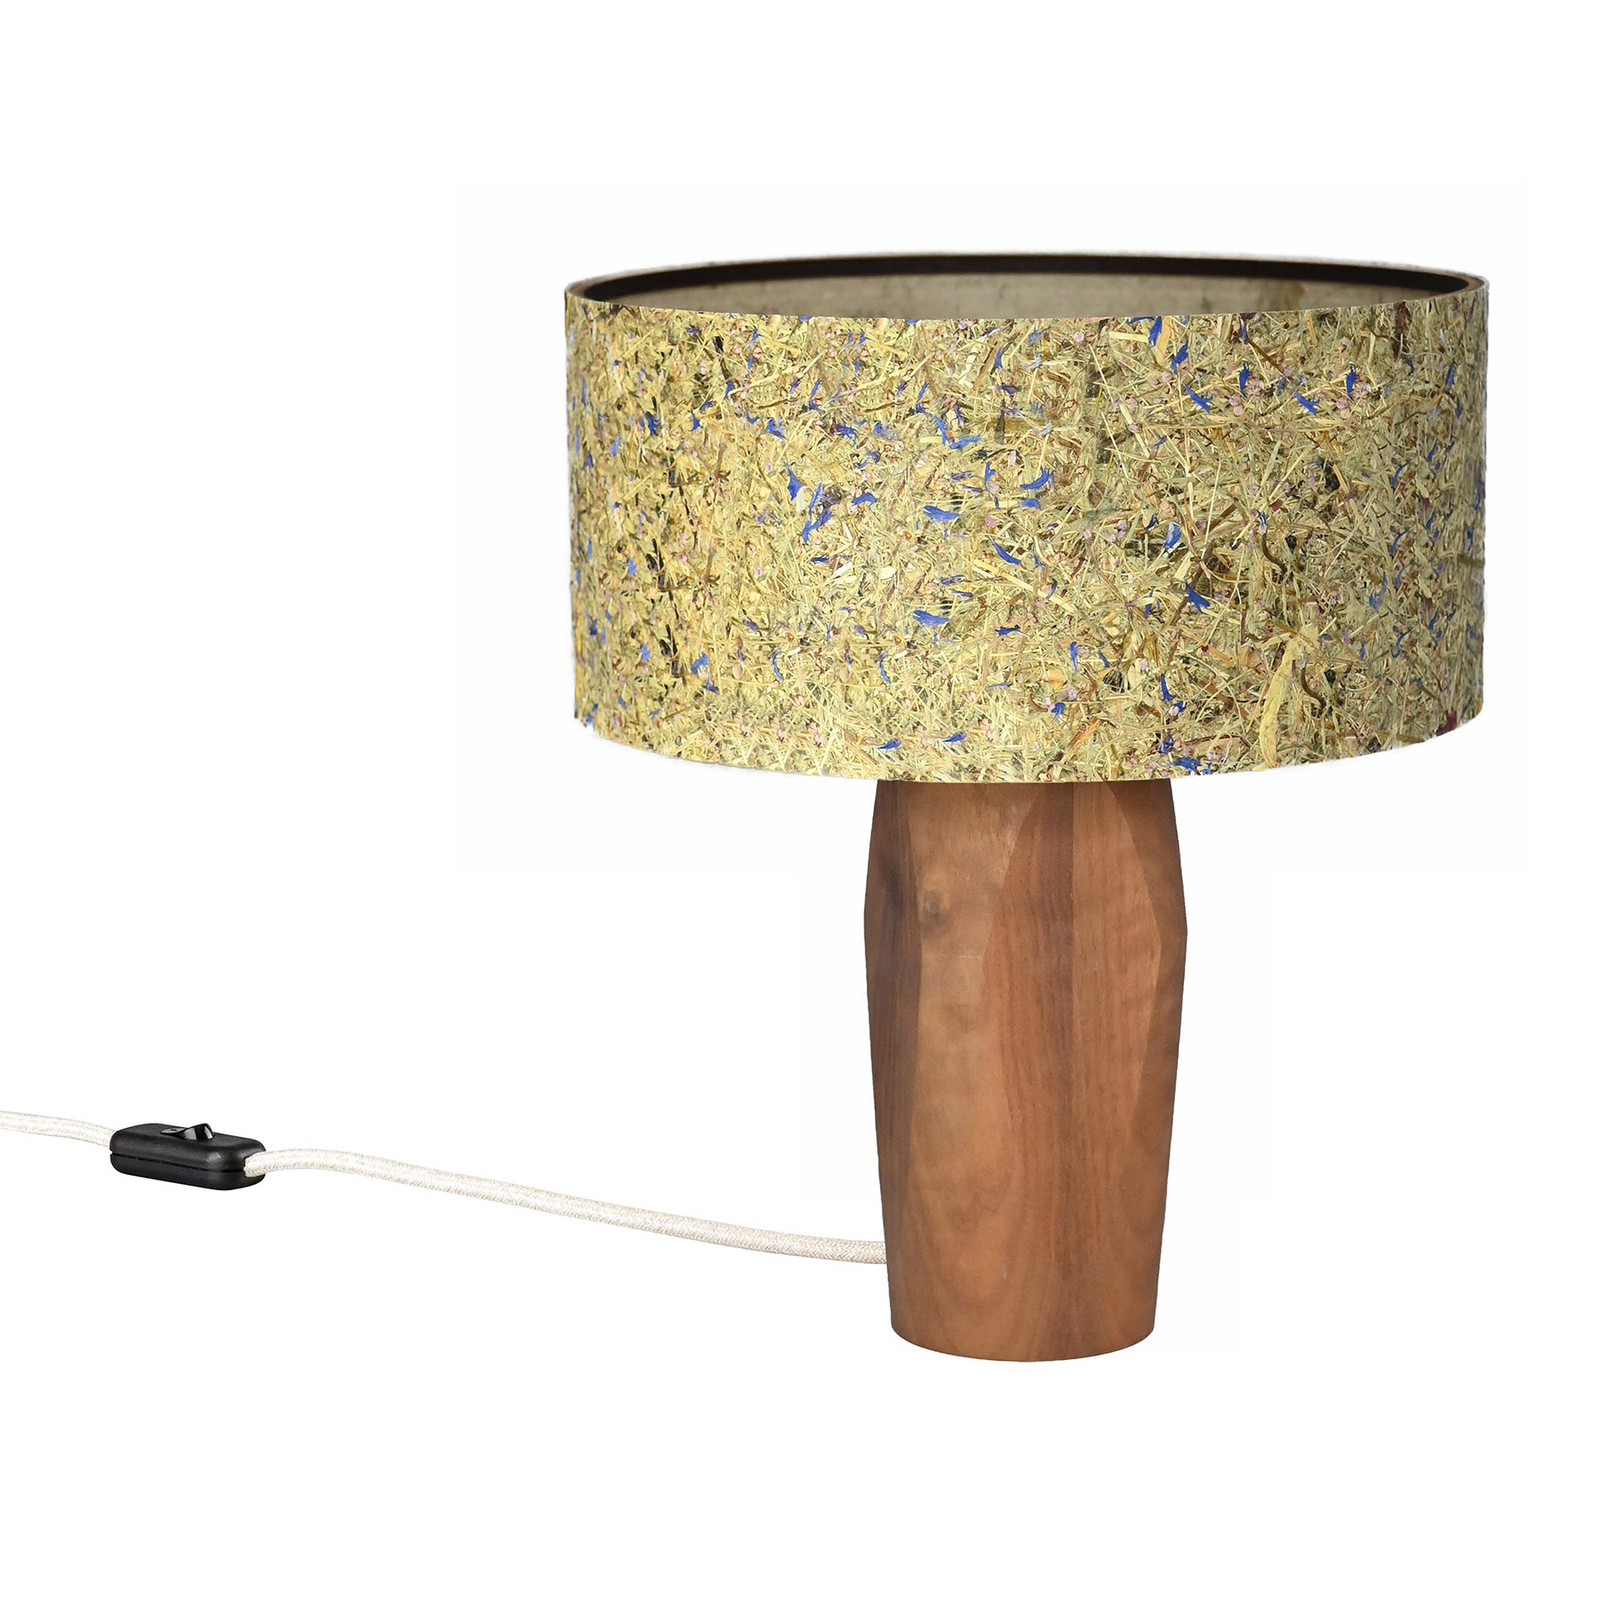 LeuchtNatur Pura LED stolní lampa ořech/chrpa